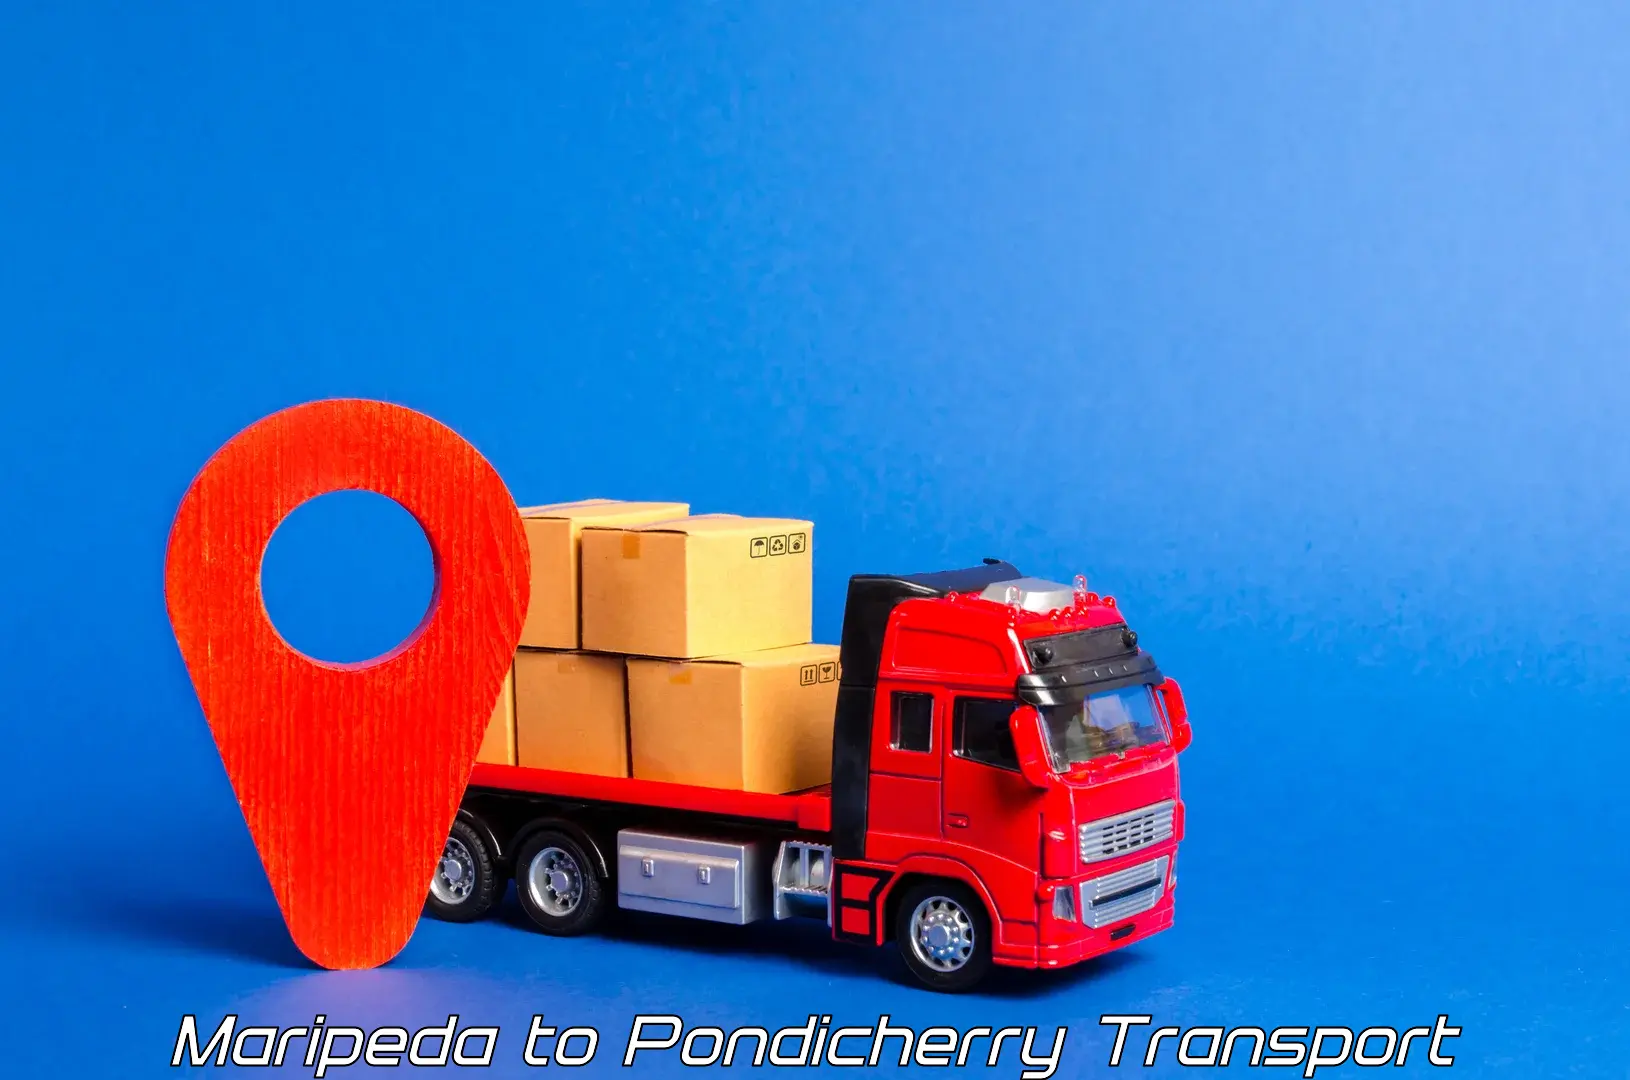 Online transport in Maripeda to Pondicherry